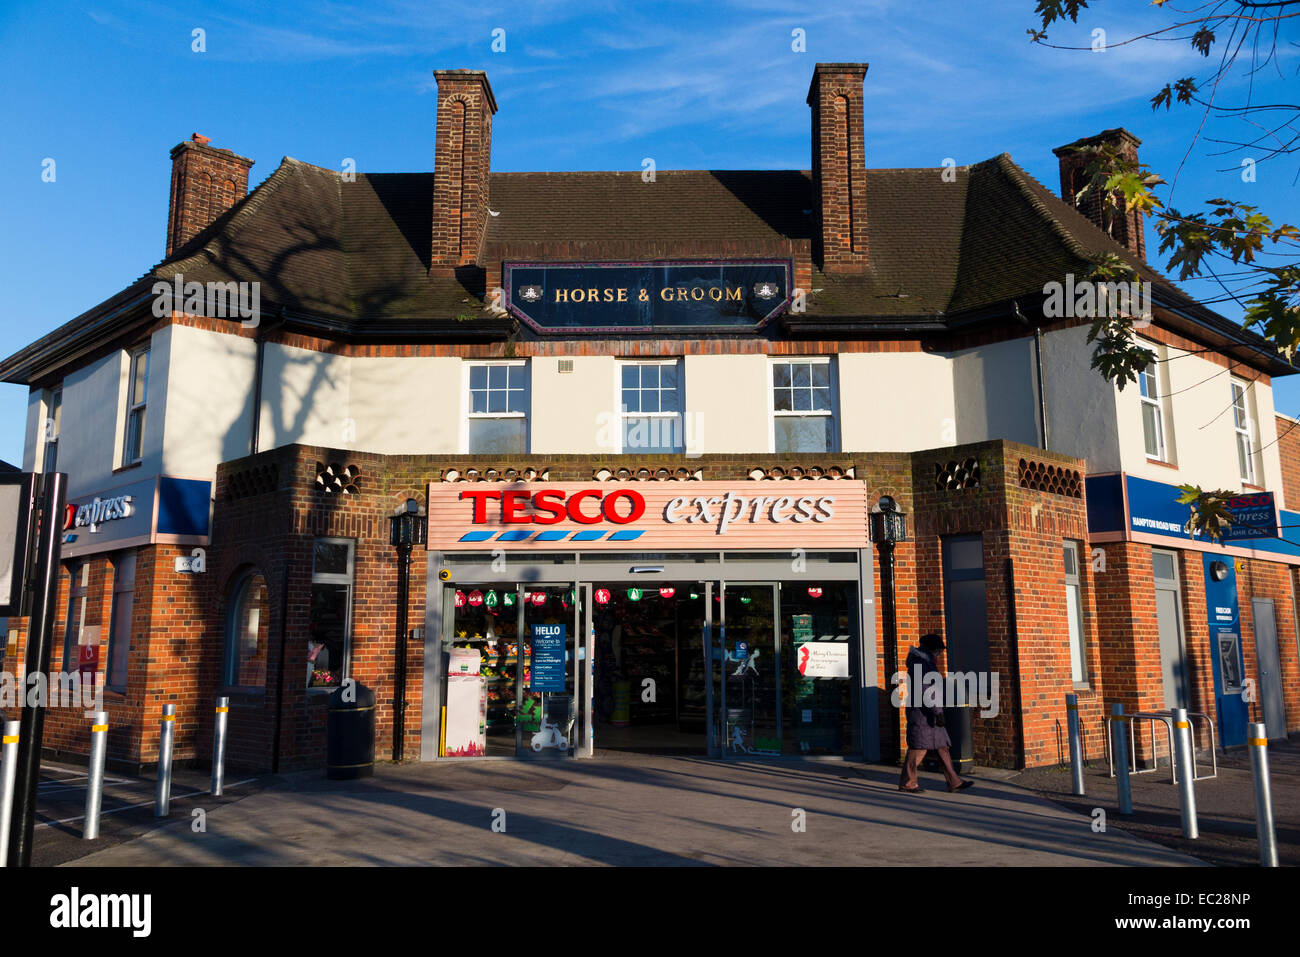 Supermarché Tesco Express : pub / public house converti de Horse and Groom en magasin de proximité / metro suoer marché. UK. Banque D'Images